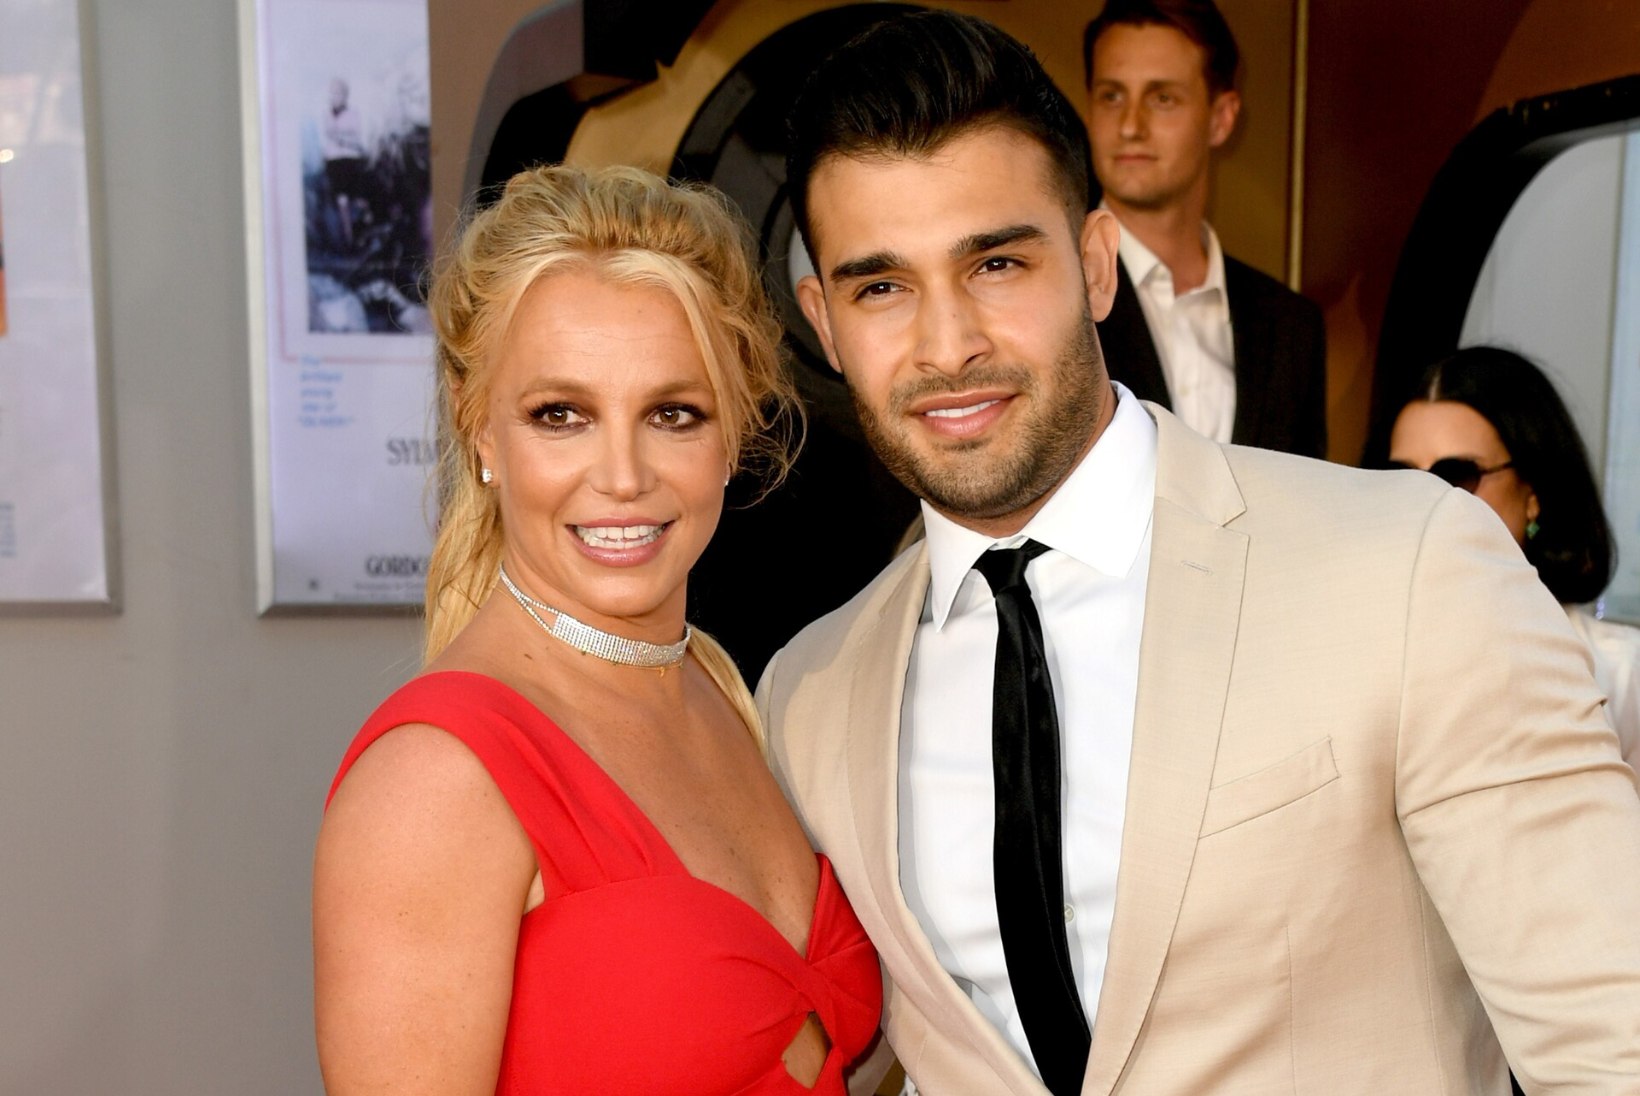 Kas Britney Spears on salaja abiellunud?!